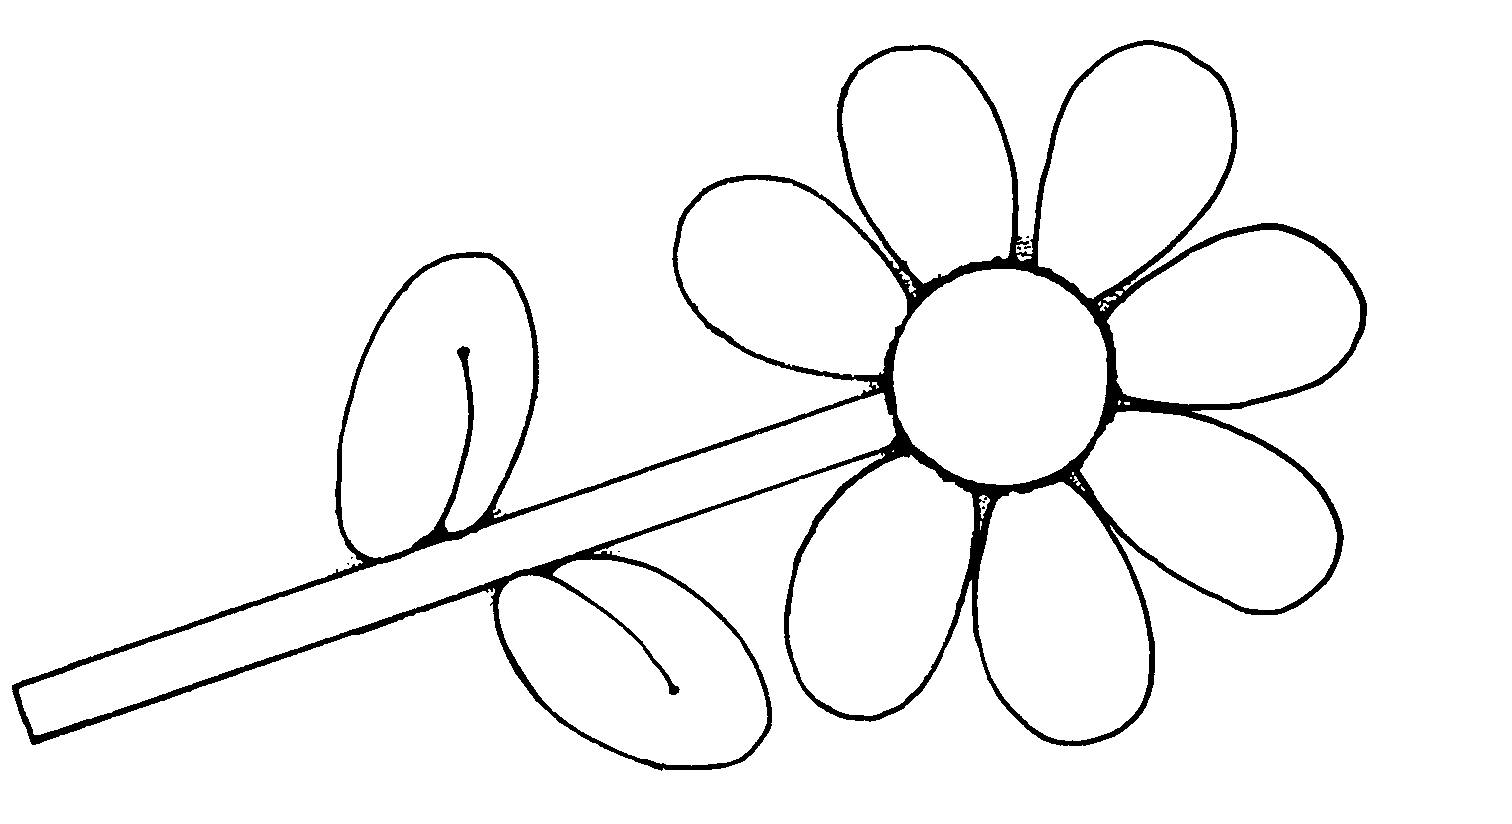 Flower stem clipart outline